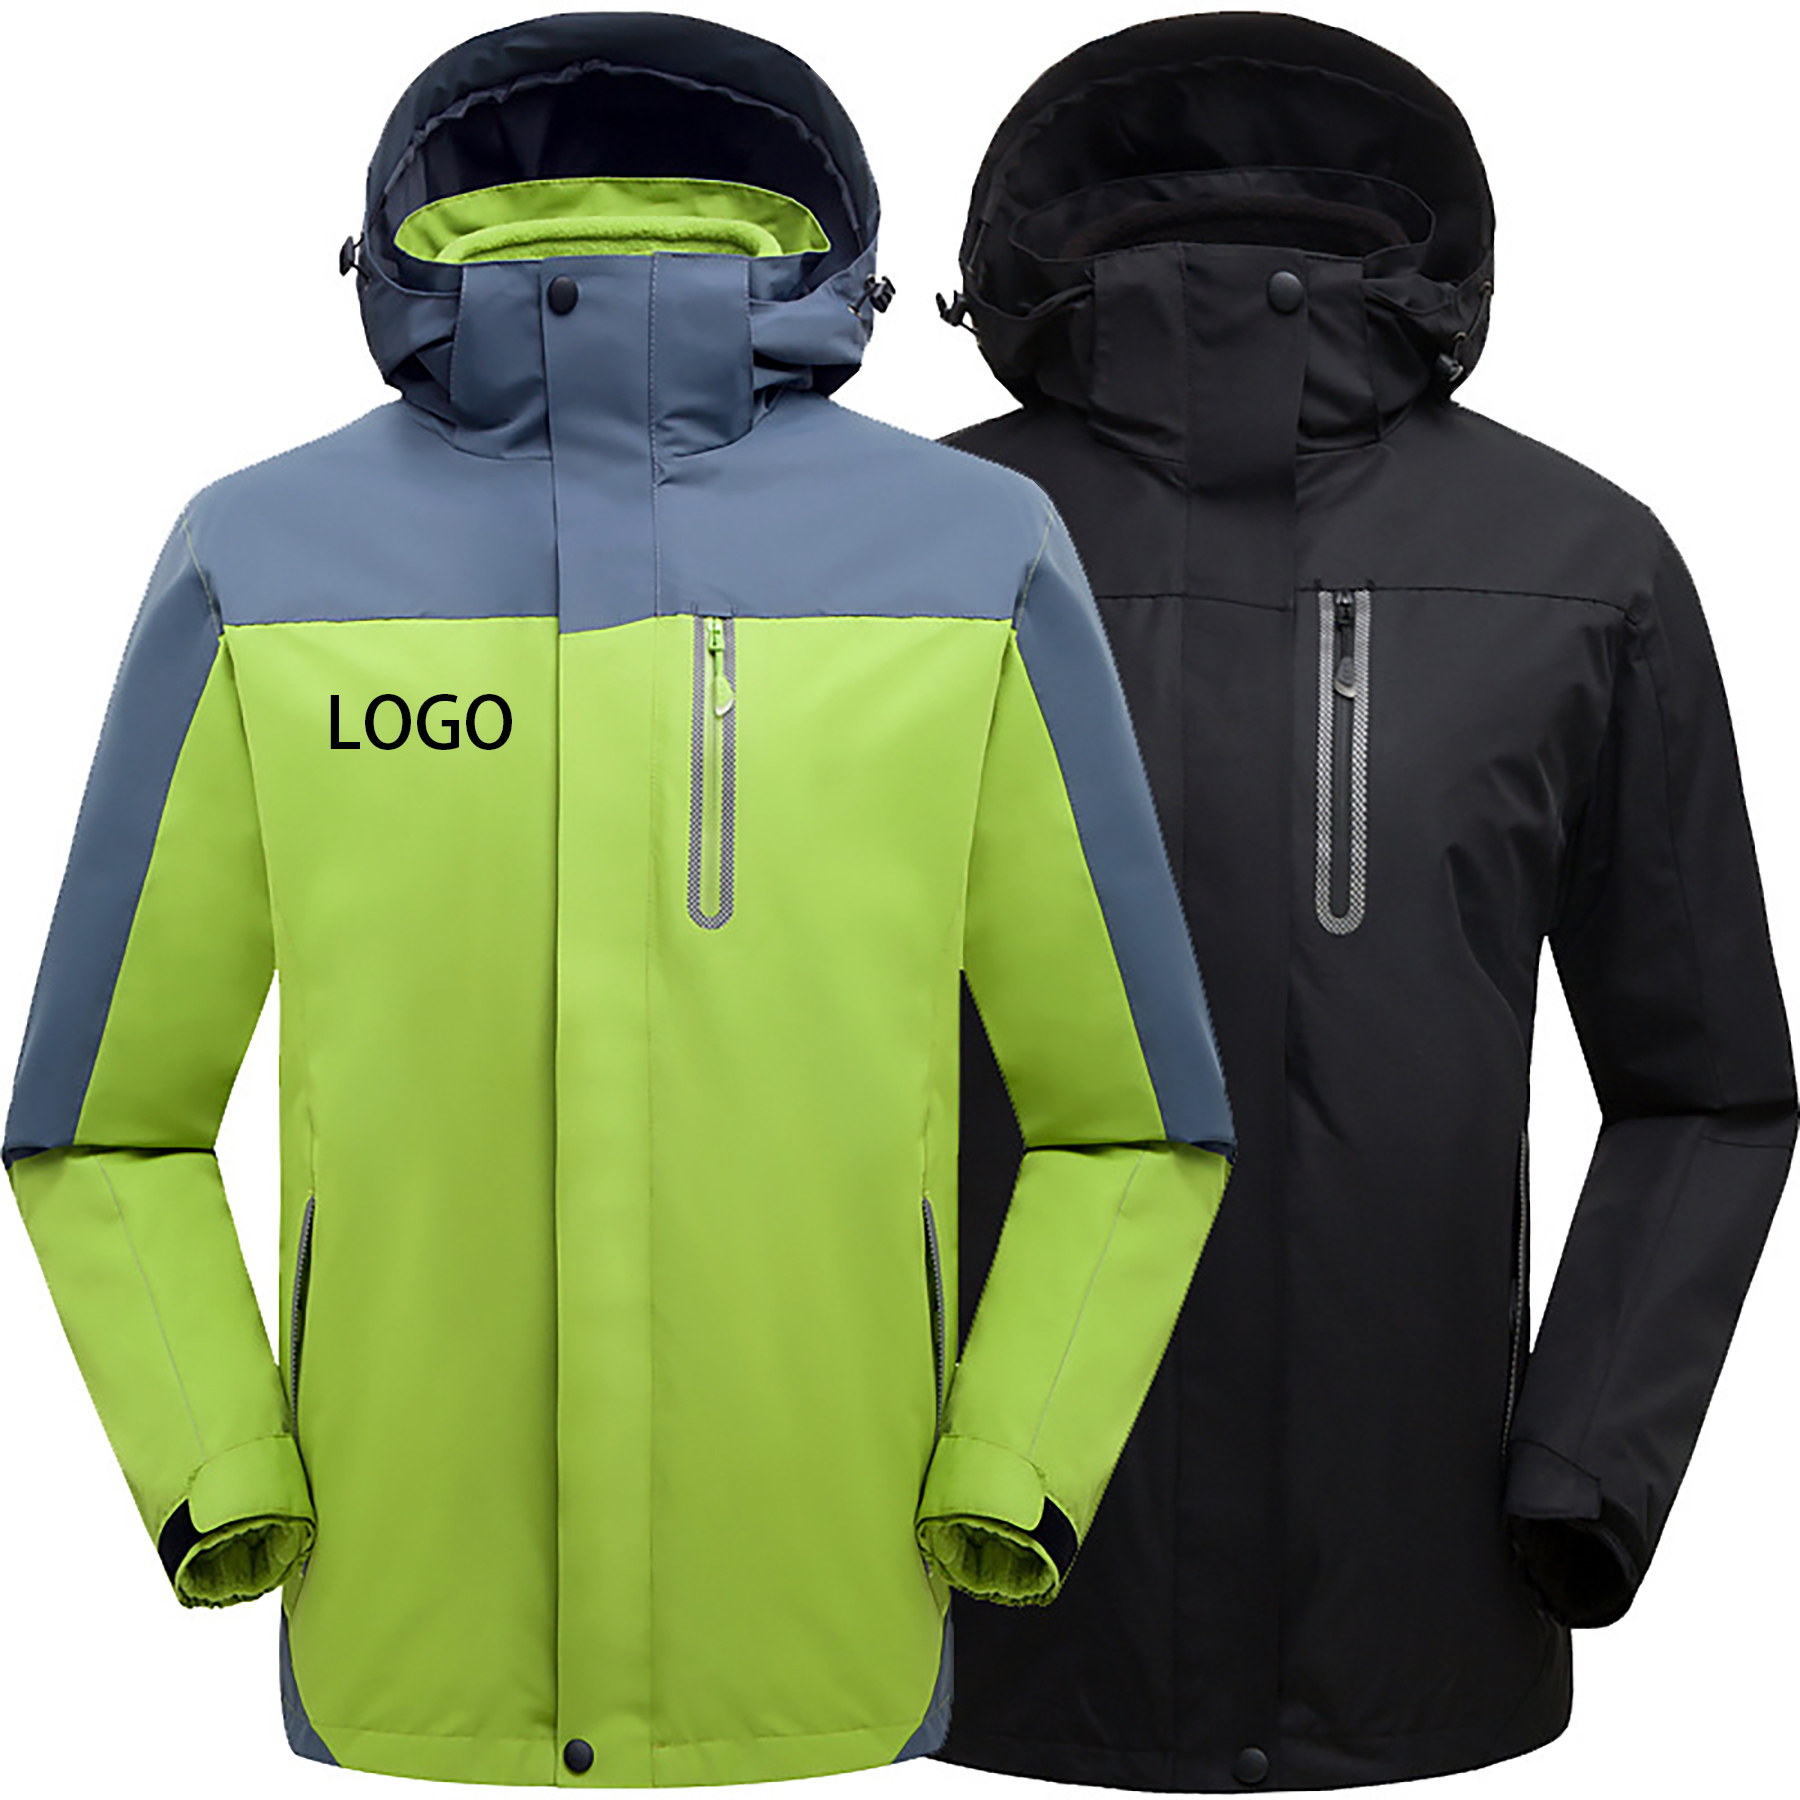 Warm Fleece Winter Jacket with Multi-Pockets